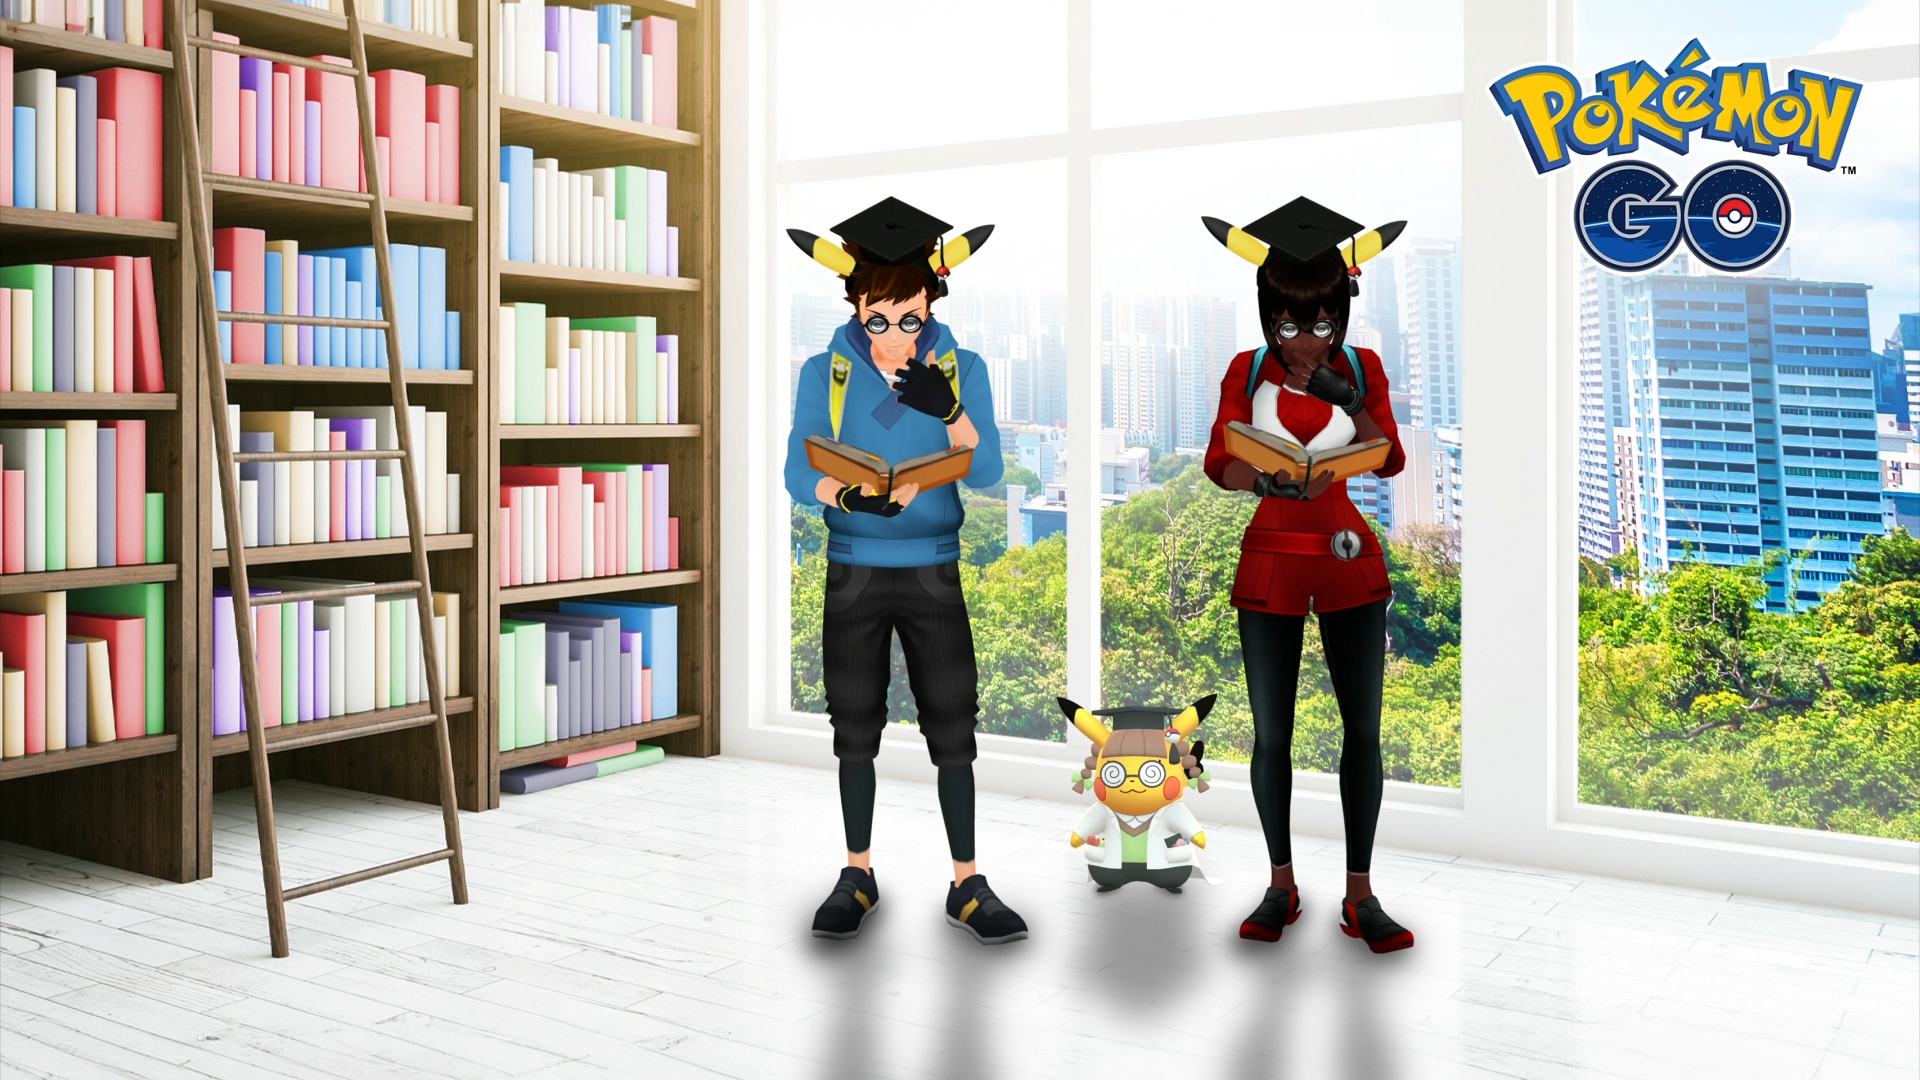 Pikachu Ph.D. in Pokemon Go